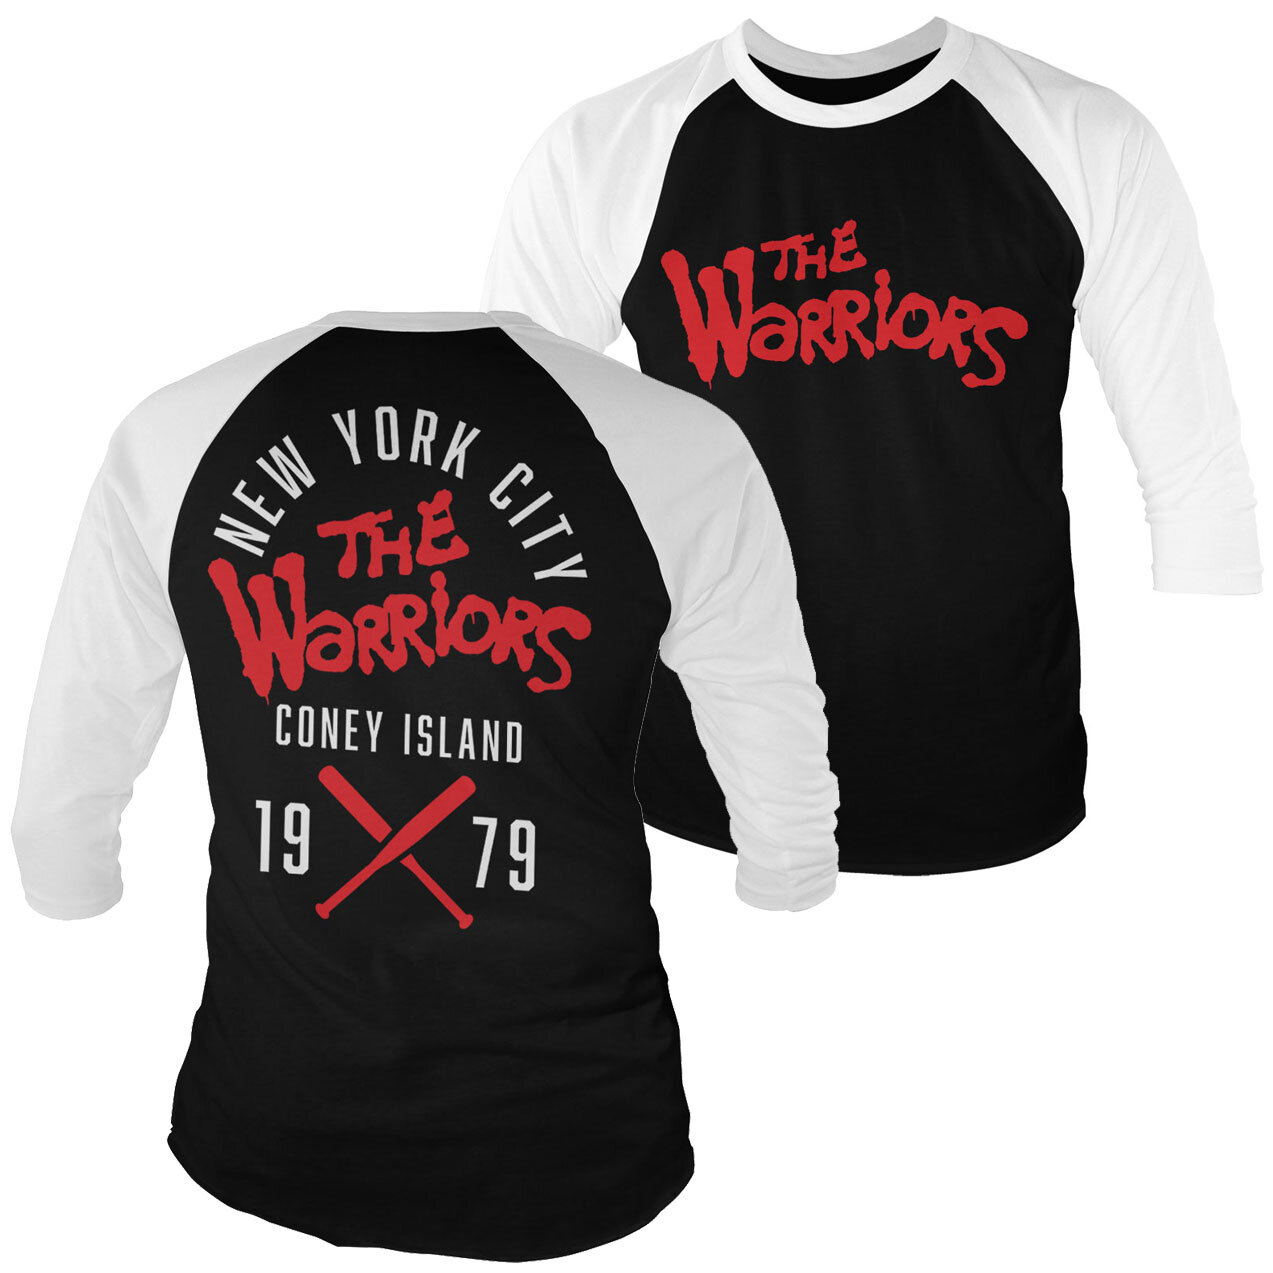 The Warriors - Island Girls Hoodie Shirtstore